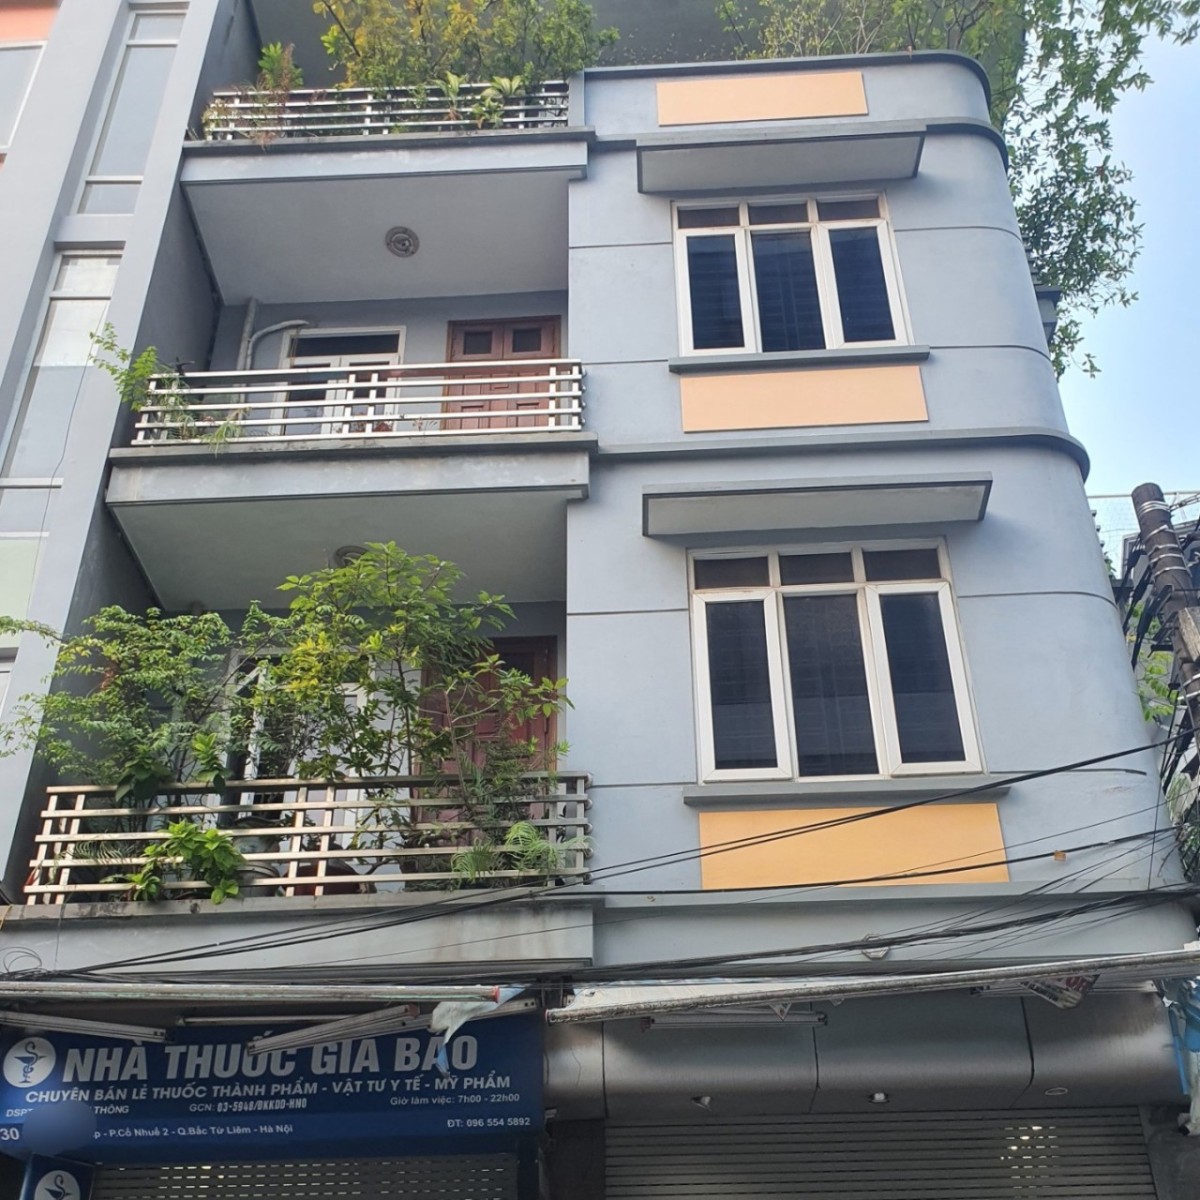 Cho thuê nhà Phạm Văn Đồng, Vp Cty, ở, 120m2 x 4 tầng, chỉ 40 triệu